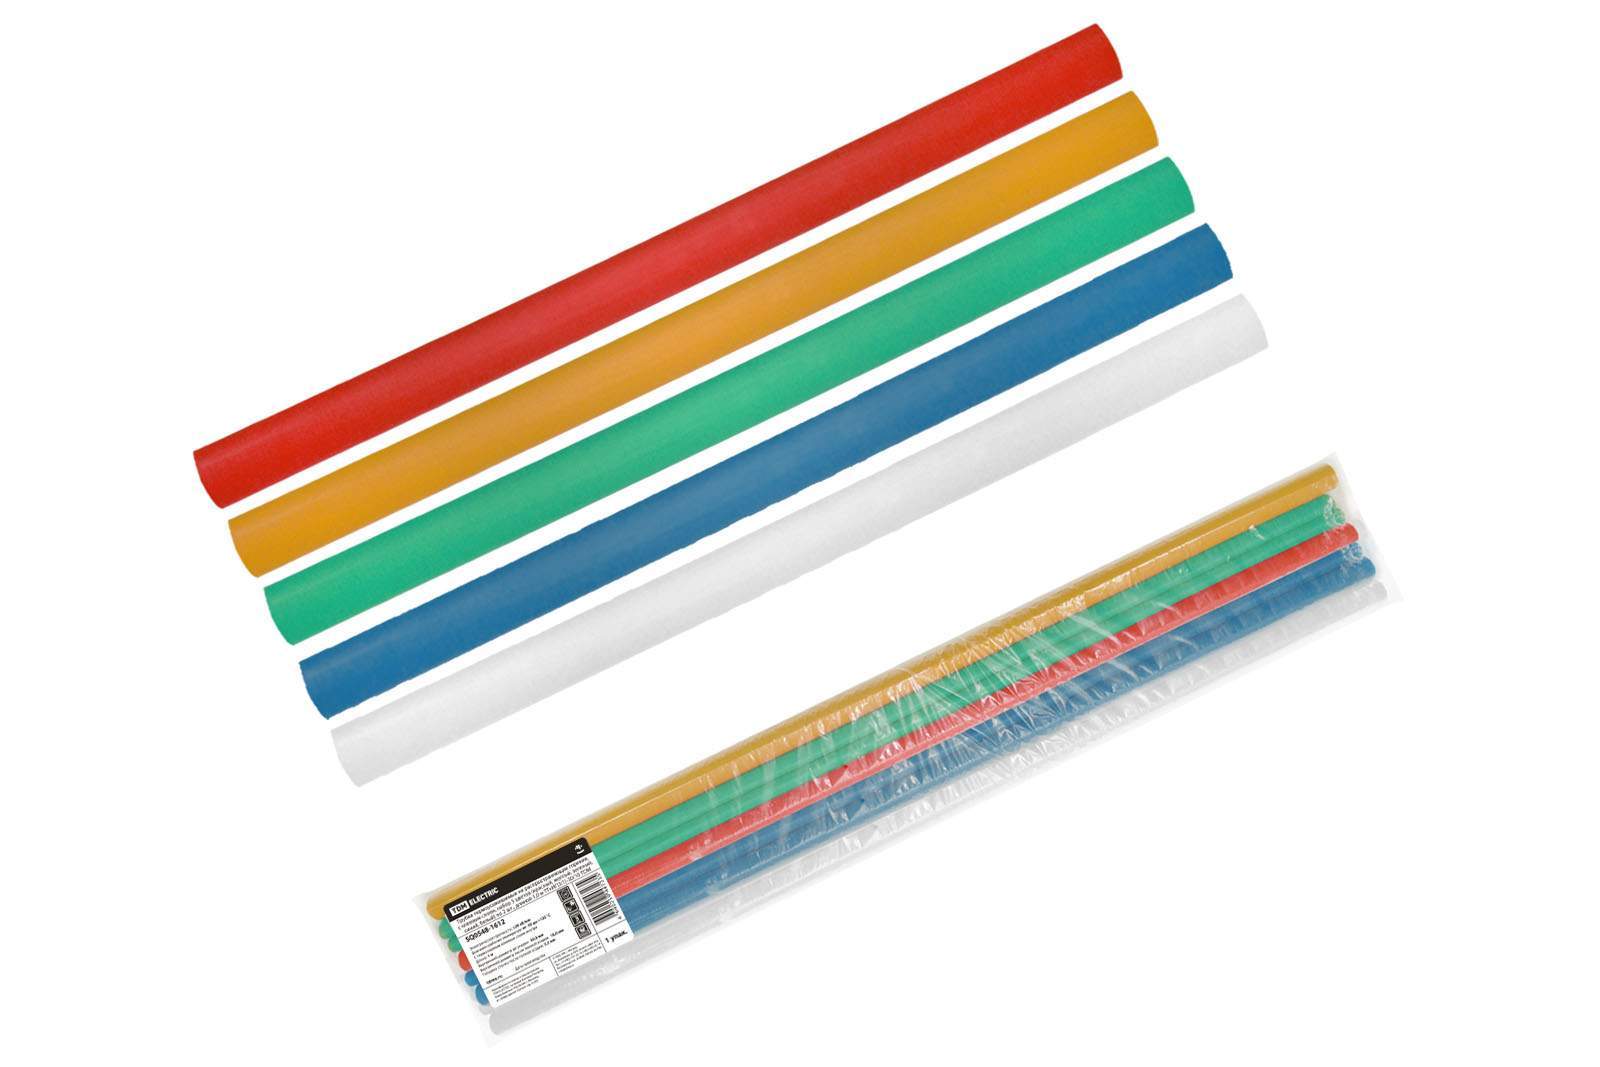 трубки термоусаживаемые, клеевые, набор 5 цветов по 2 шт. тткнг(3:1)-30/10 tdm от BTSprom.by